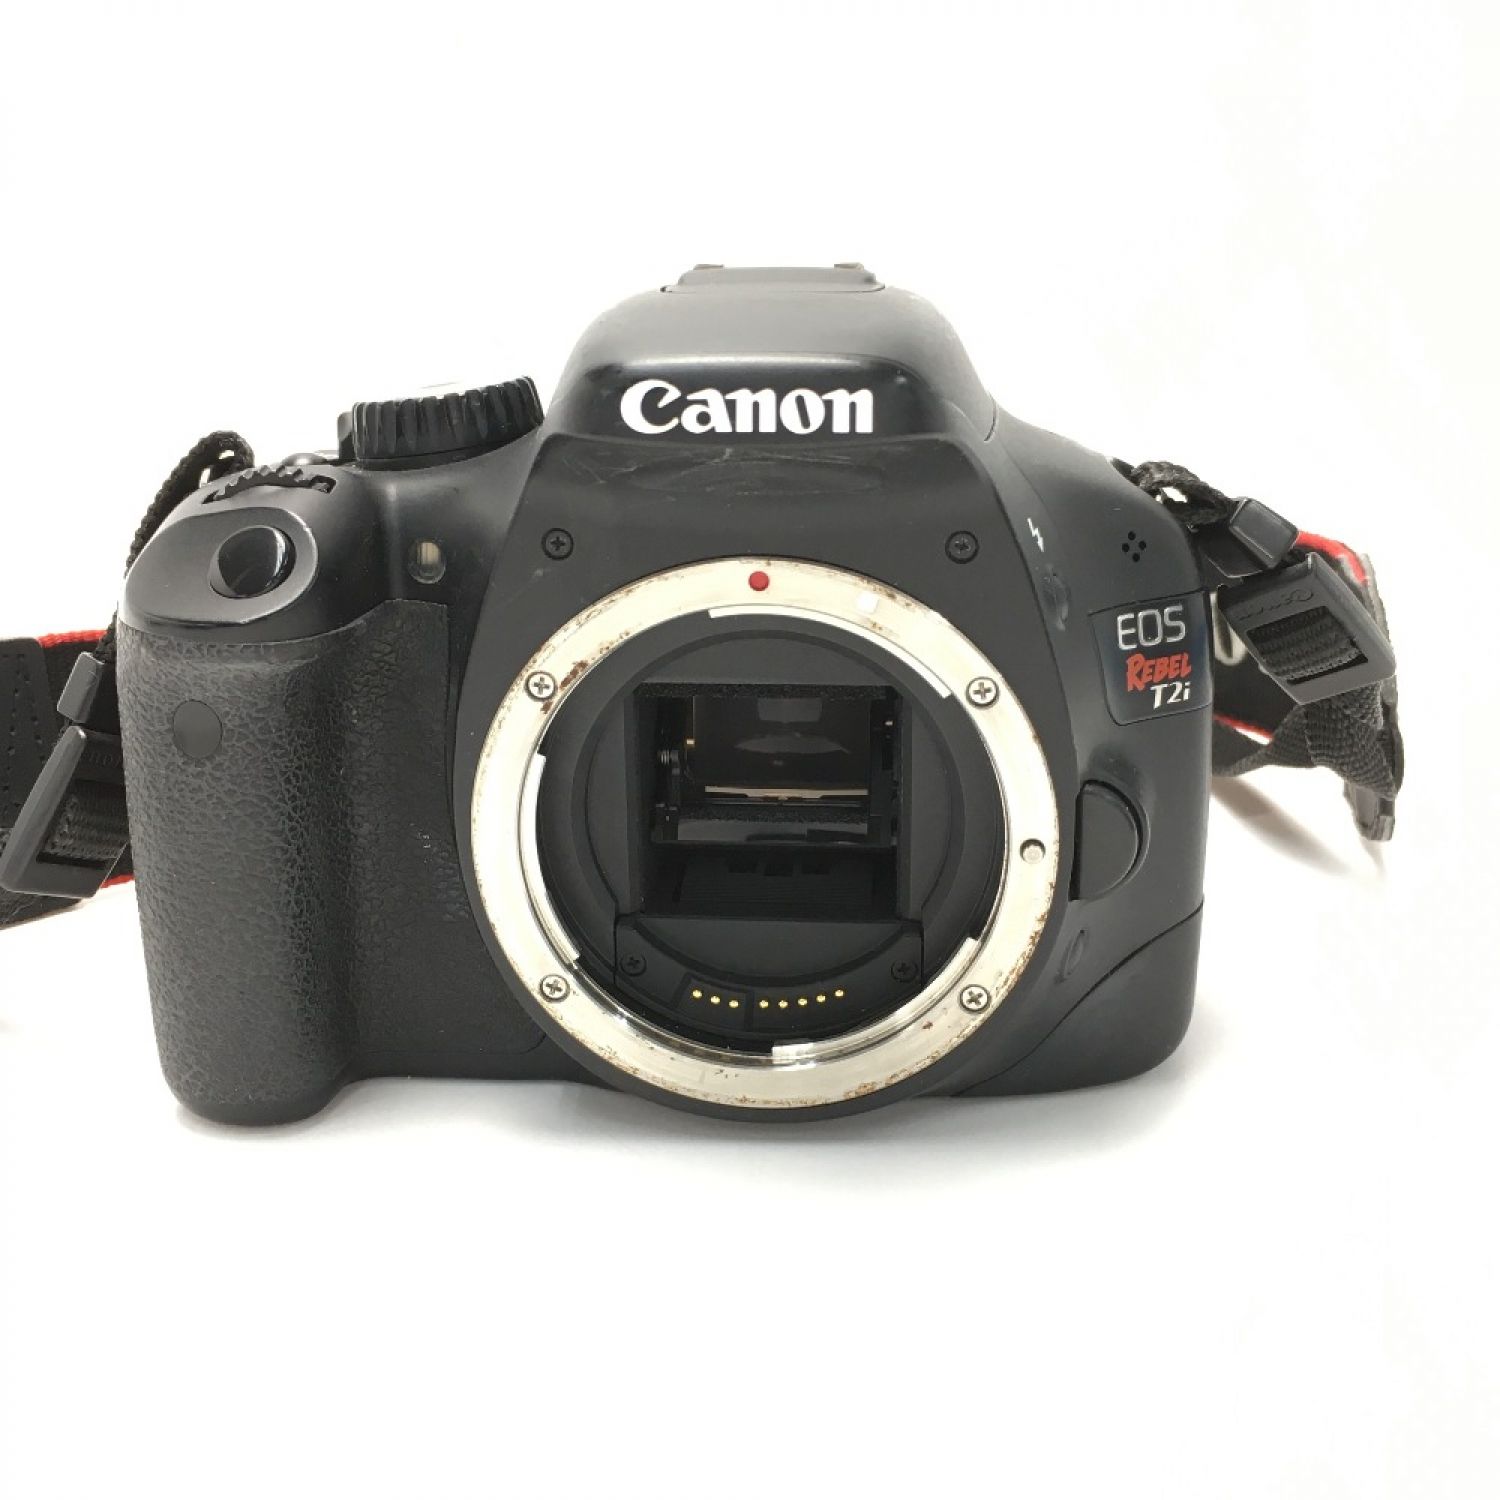 Canon デジタル一眼レフ ボディー EOS rebel T2i レンズキット